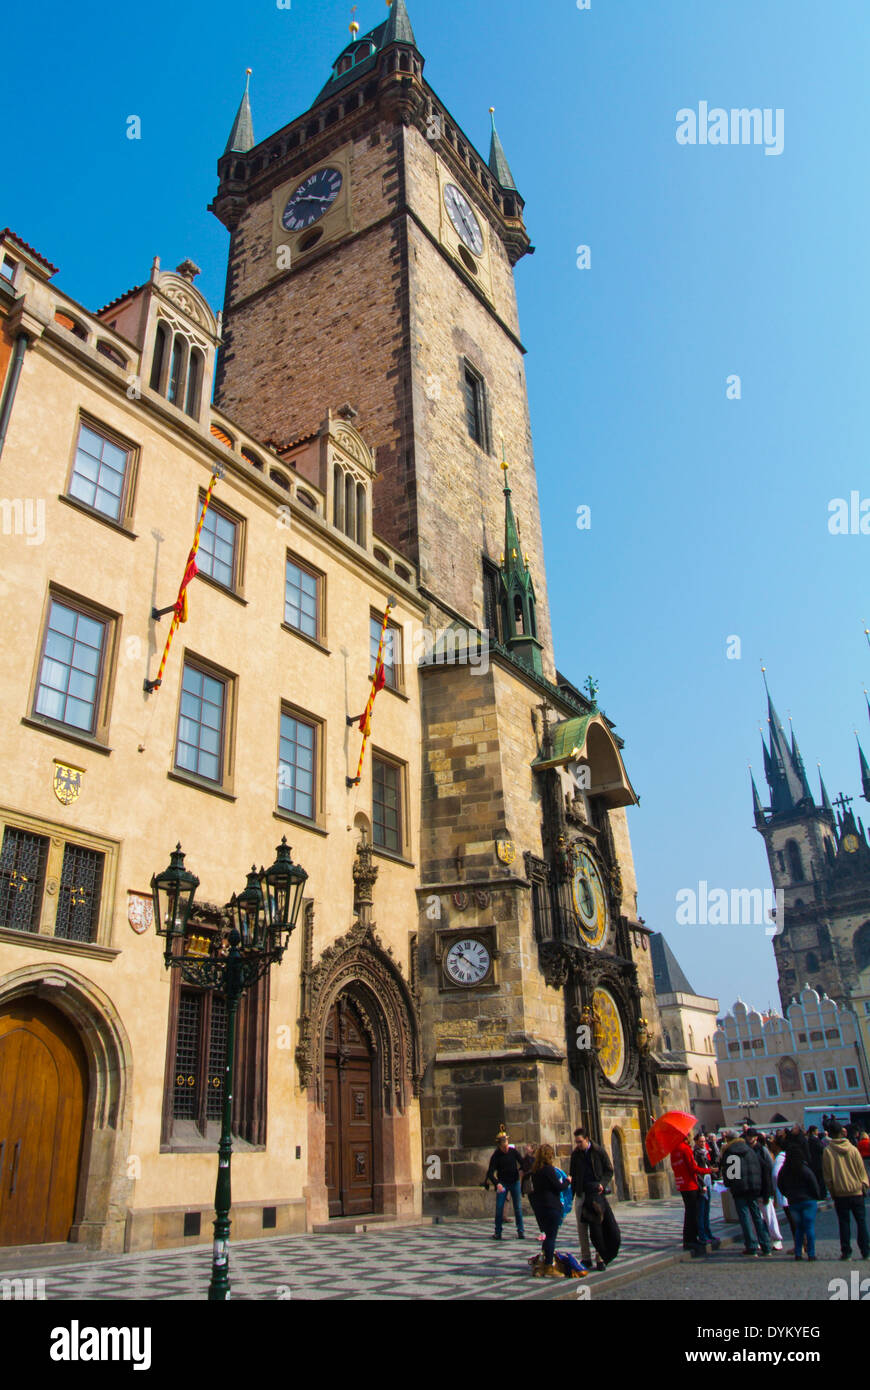 Staroměstská Radnice, alte Rathaus der Stadt, Staromestske Namesti, Altstädter Ring, Prag, Tschechische Republik, Europa Stockfoto